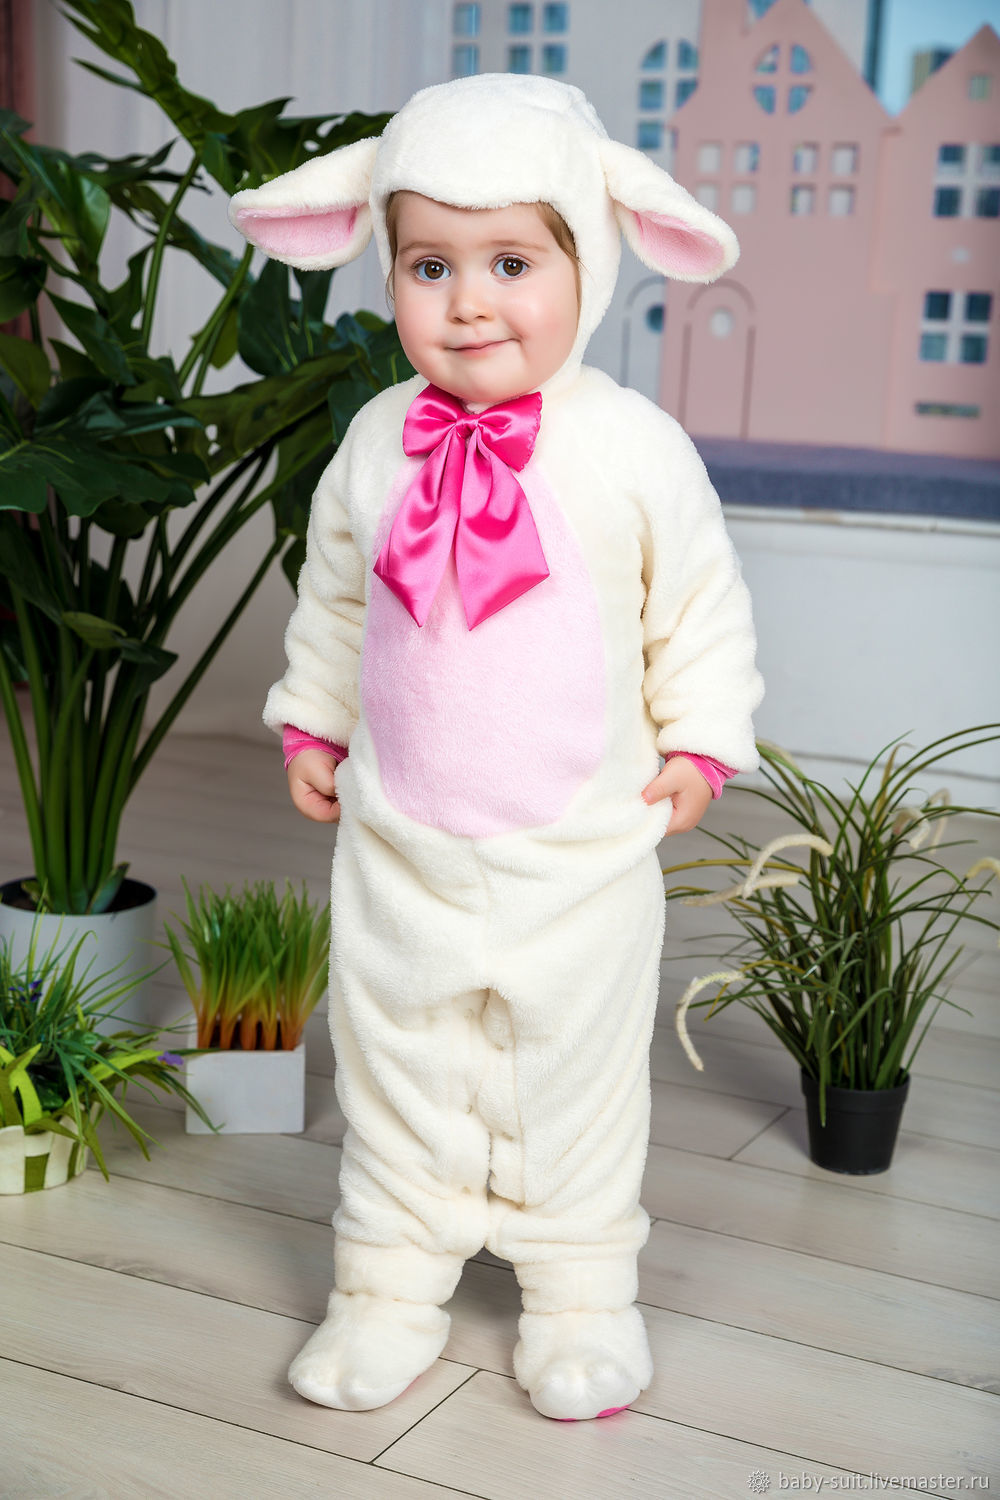 Купить карнавальные костюмы для новорожденных в интернет магазине paraskevat.ru